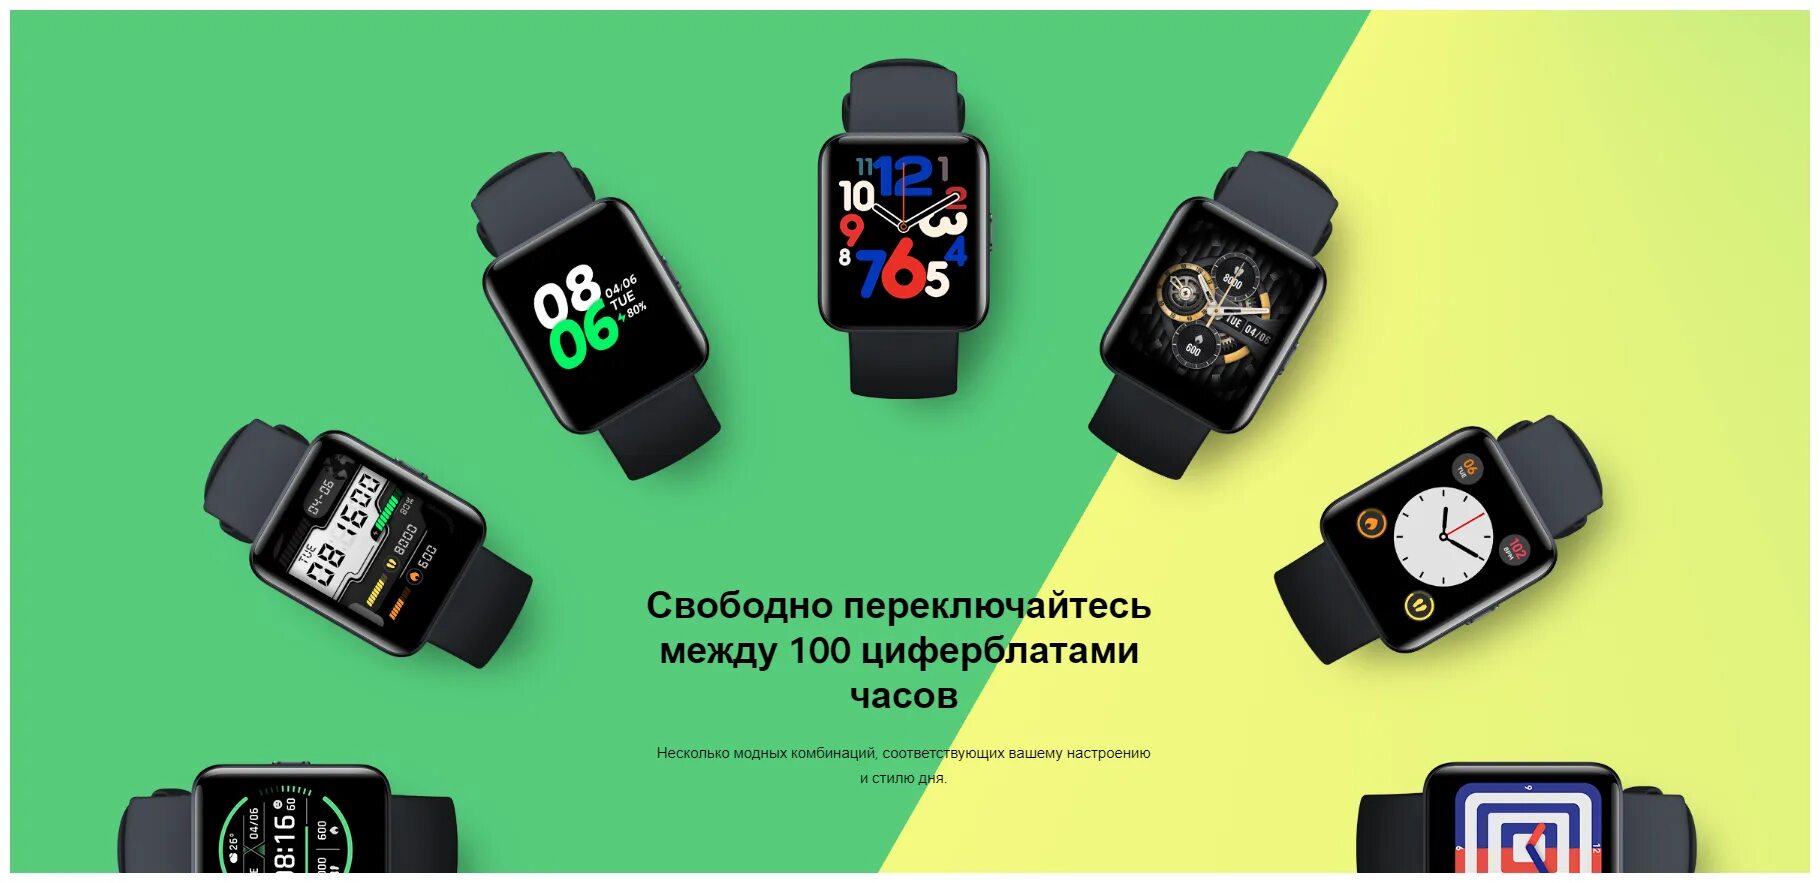 Обзор часов redmi watch 4. Смарт-часы Xiaomi Redmi watch 2 Lite. Смарт часы редми 2 Лайт. Часы редми вотч 2 Лайт. Смарт-часы Xiaomi Redmi watch 2 Lite, черные.